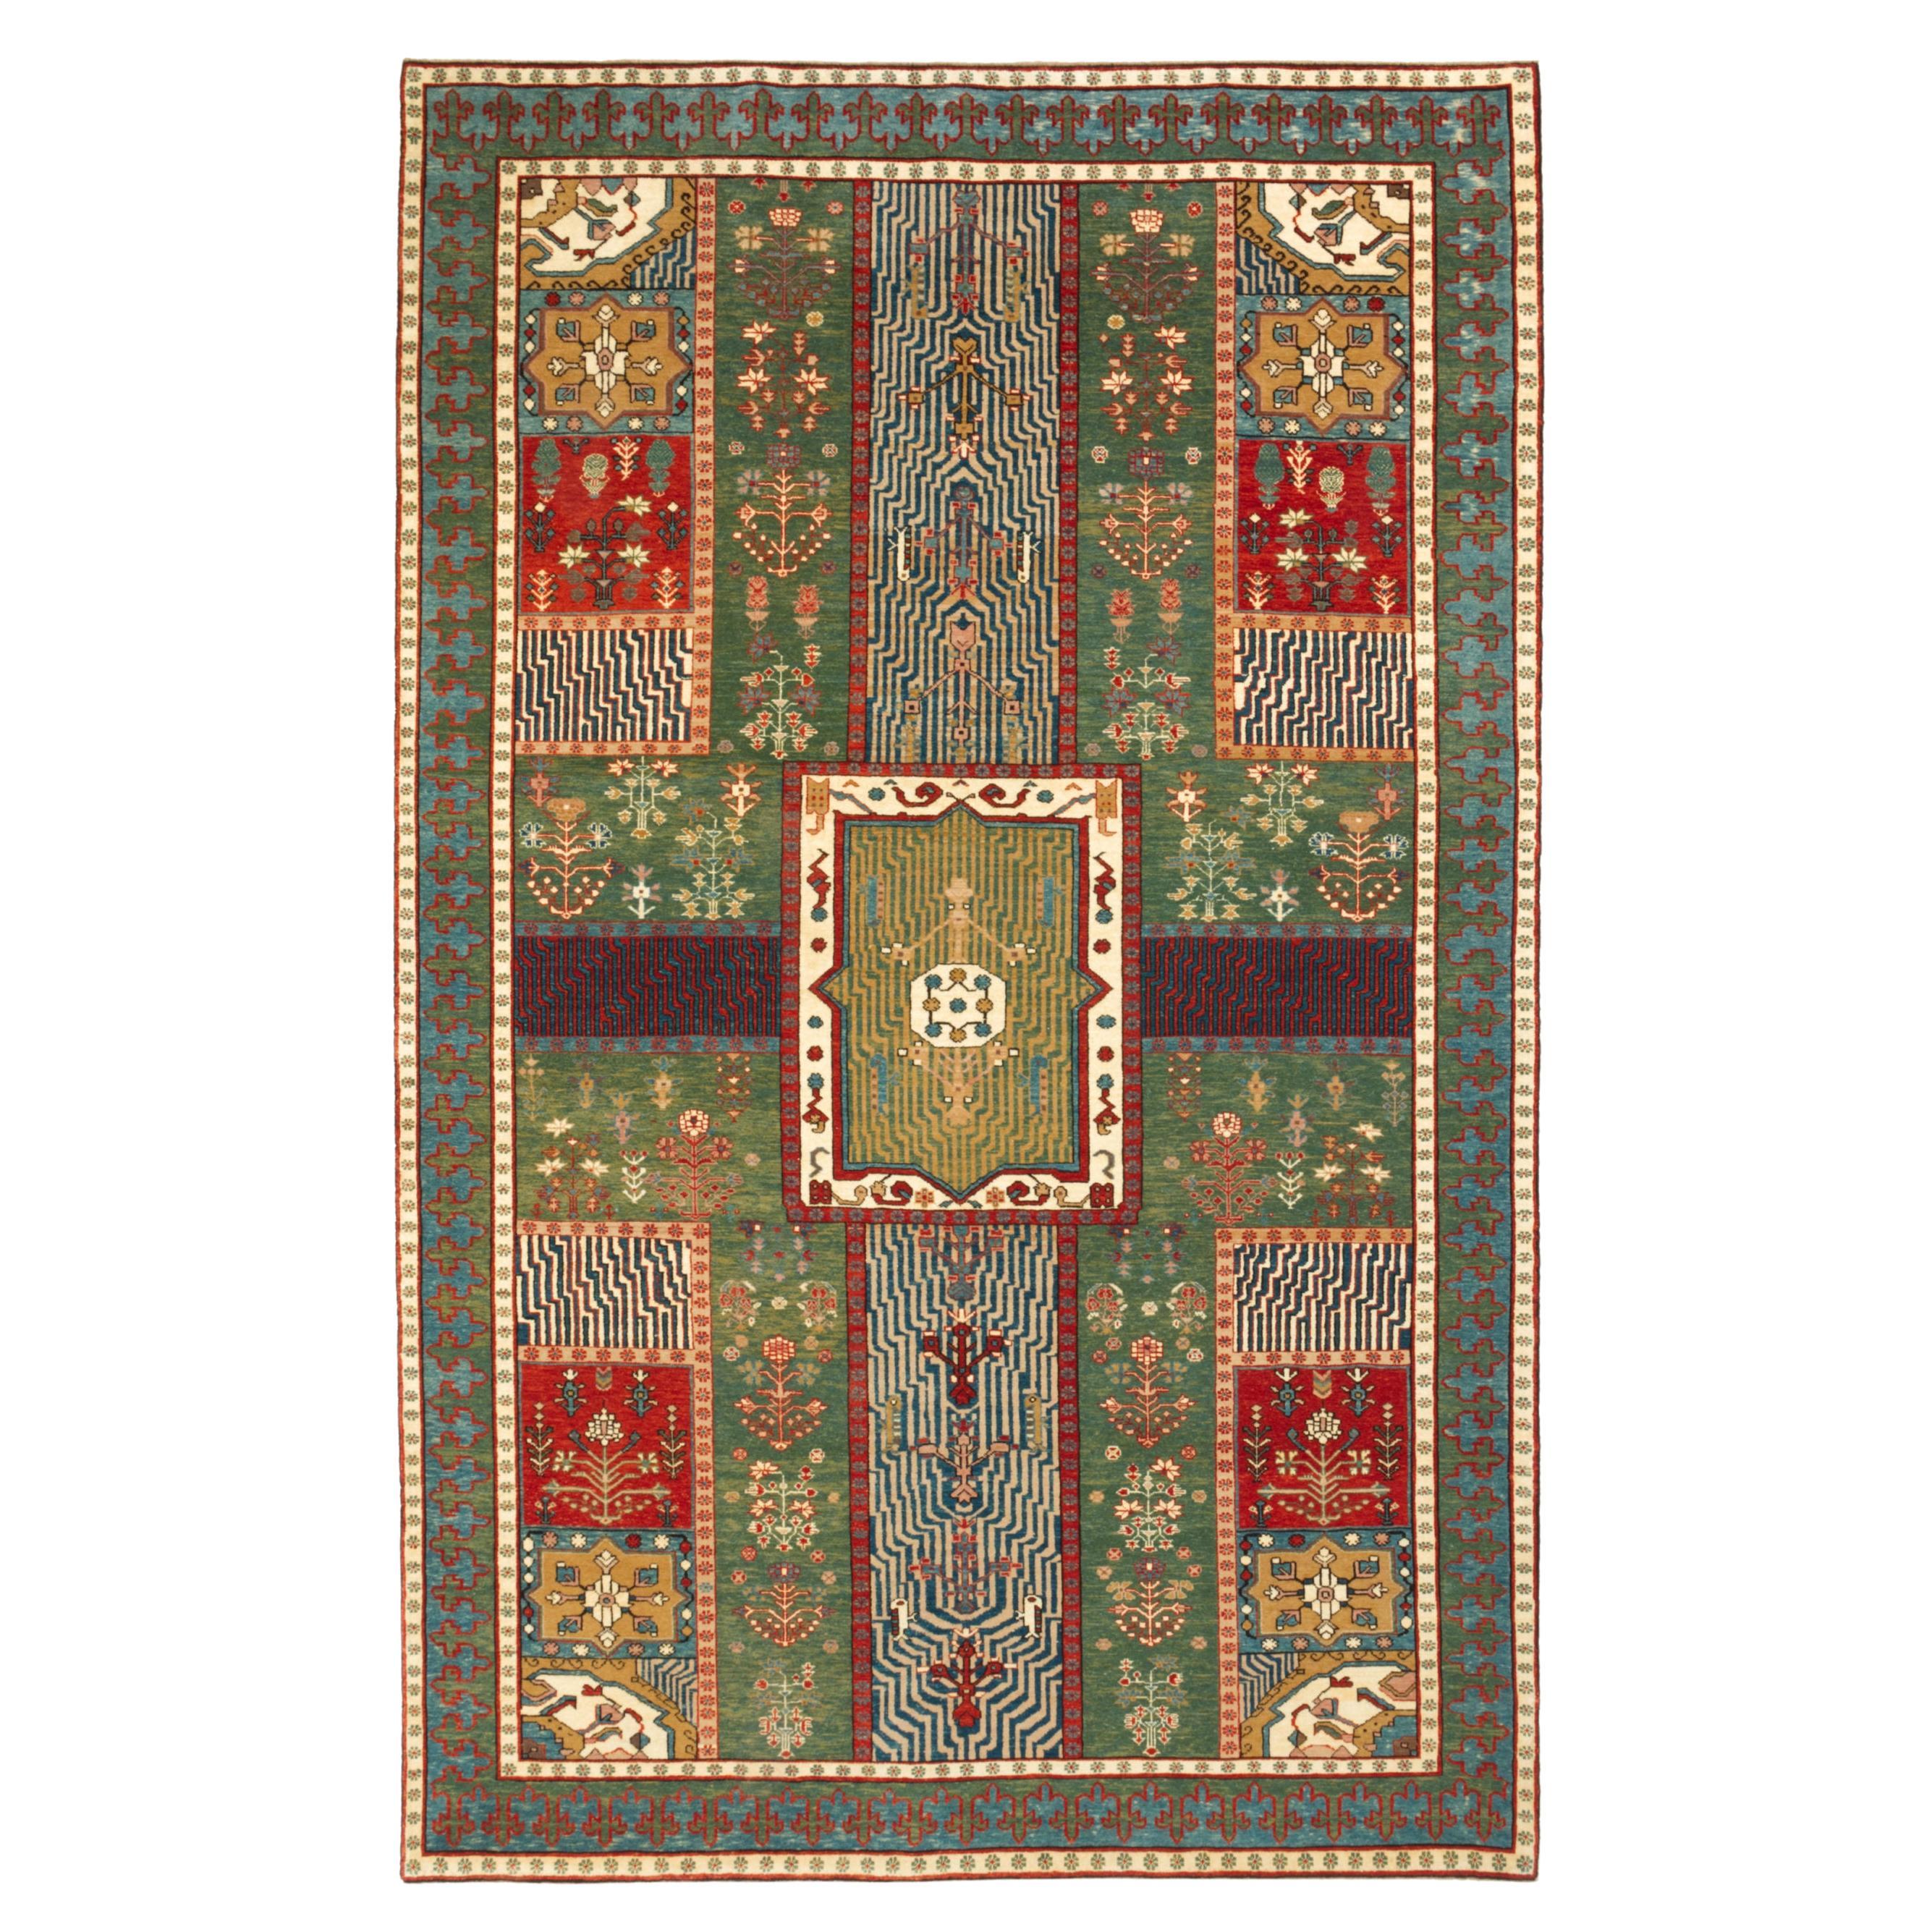 Ararat-Teppich Gartenteppich - Teppich im persischen Stil des 18. Jahrhunderts - Naturfarben 